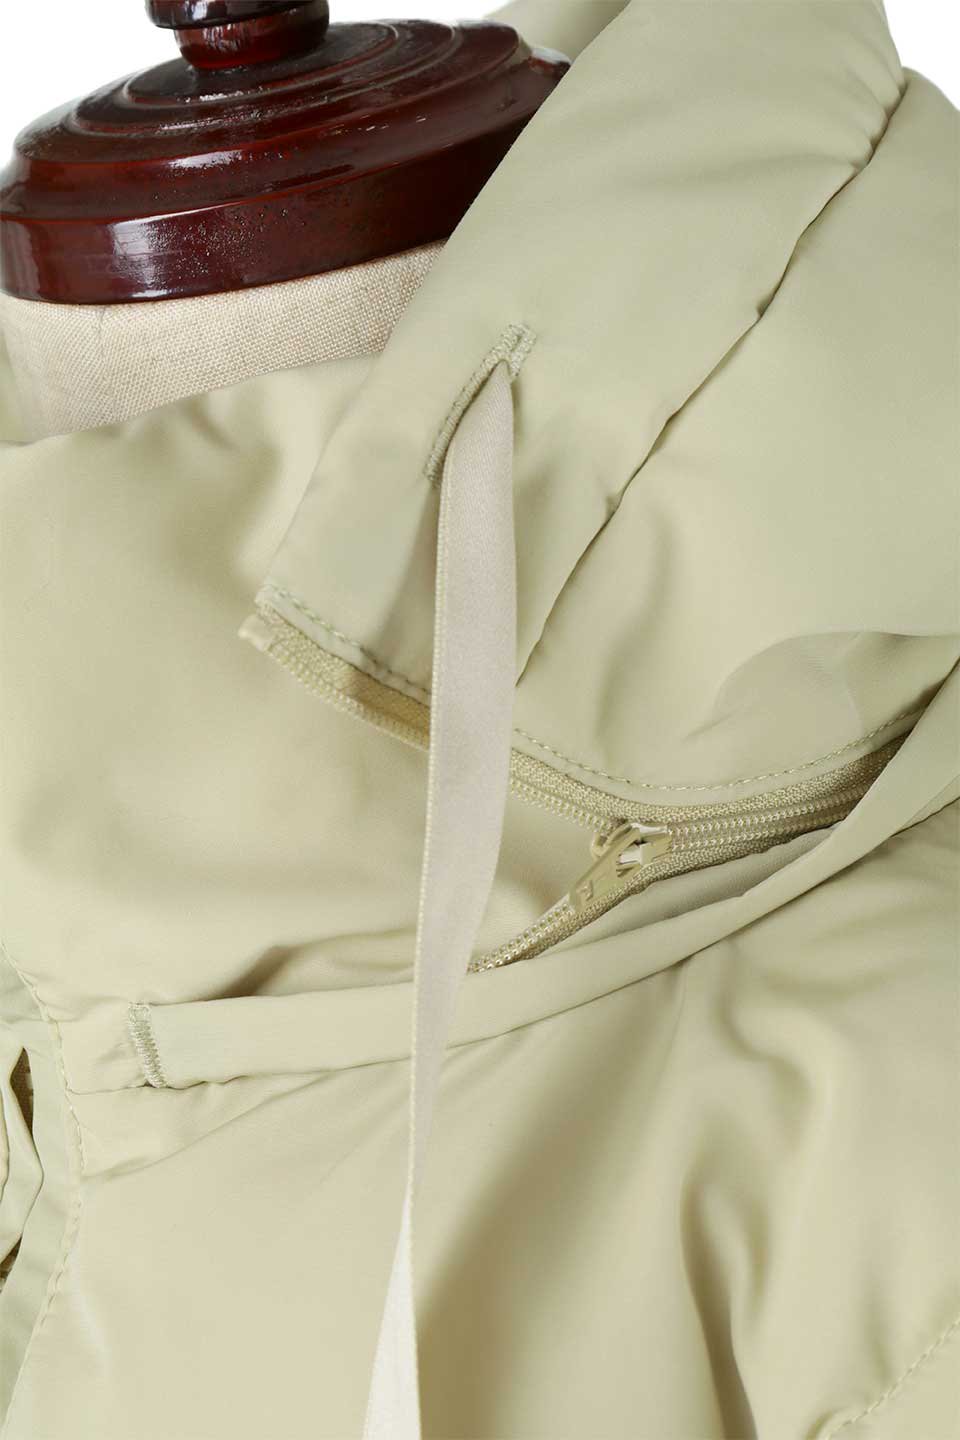 SORONAShortPufferJacketソロナ中綿・ショートジャケット大人カジュアルに最適な海外ファッションのothers（その他インポートアイテム）のアウターやジャケット。ボリューミーだけど着ぶくれしない。デュポン社の新素材を使用した中綿ジャケット。/main-18